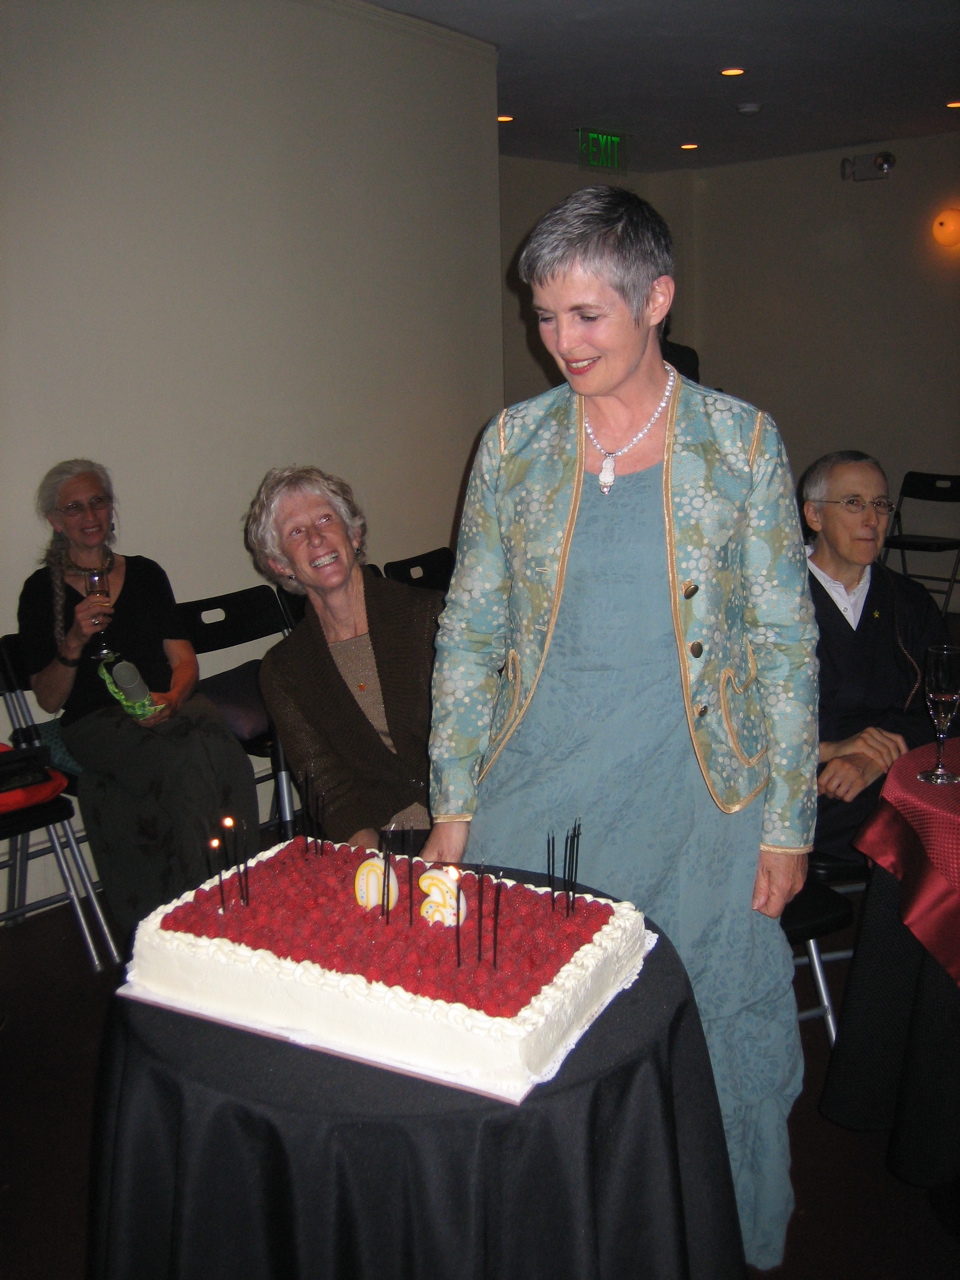 60th birthday celebration